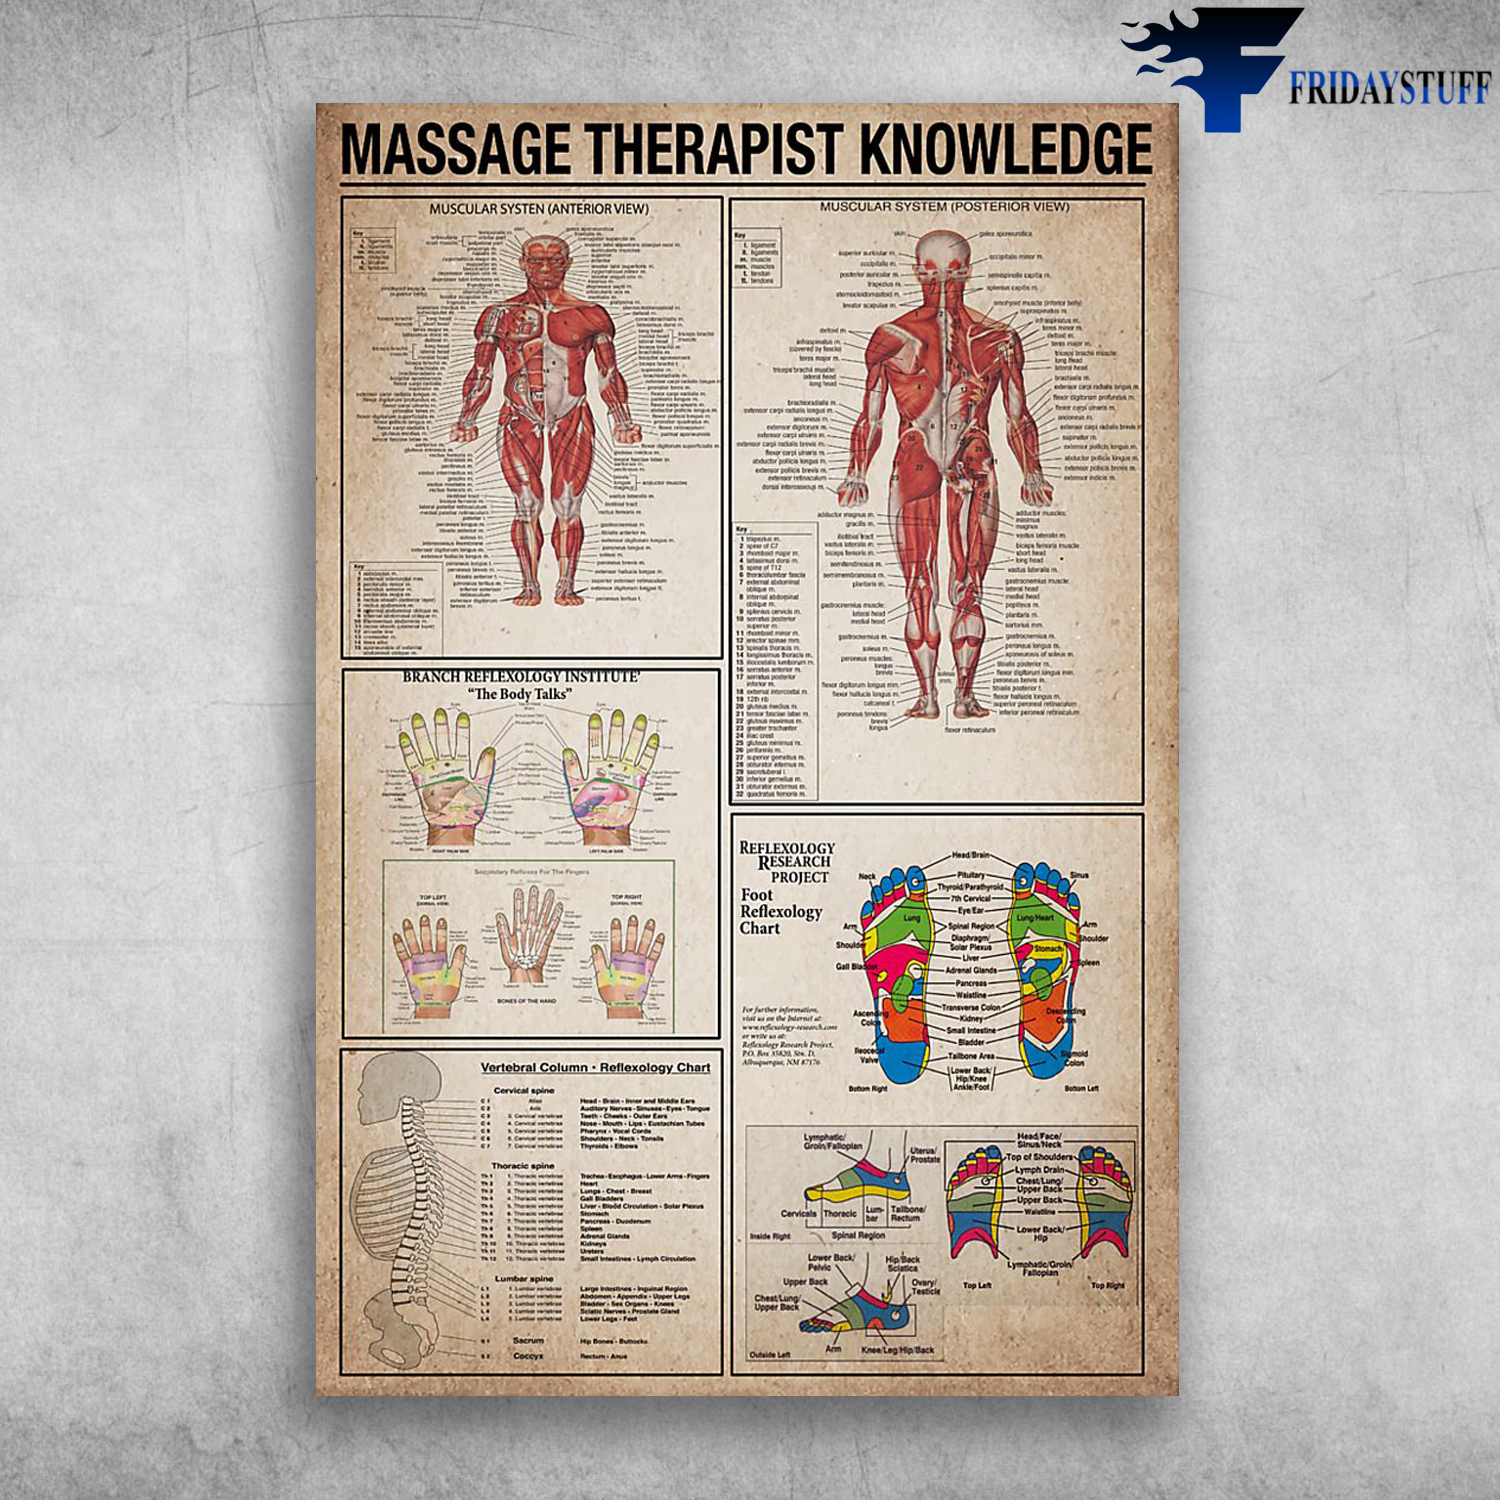 Massage Therapist Knowledge Muscular Systen Branch Reflexology Institude